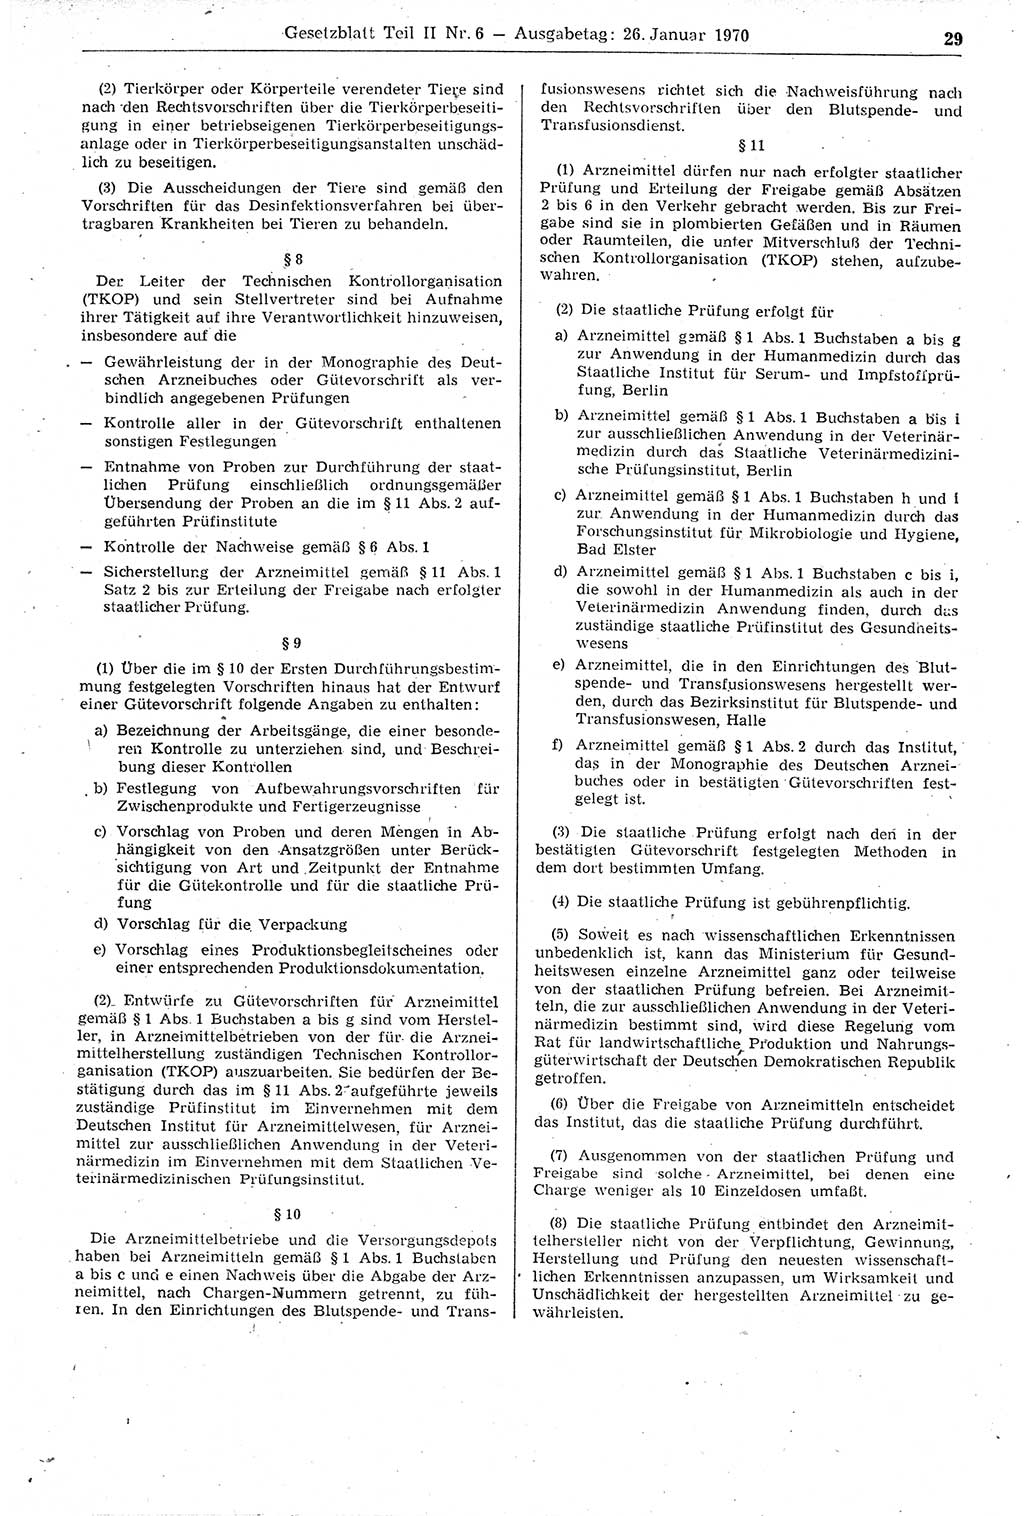 Gesetzblatt (GBl.) der Deutschen Demokratischen Republik (DDR) Teil ⅠⅠ 1970, Seite 29 (GBl. DDR ⅠⅠ 1970, S. 29)